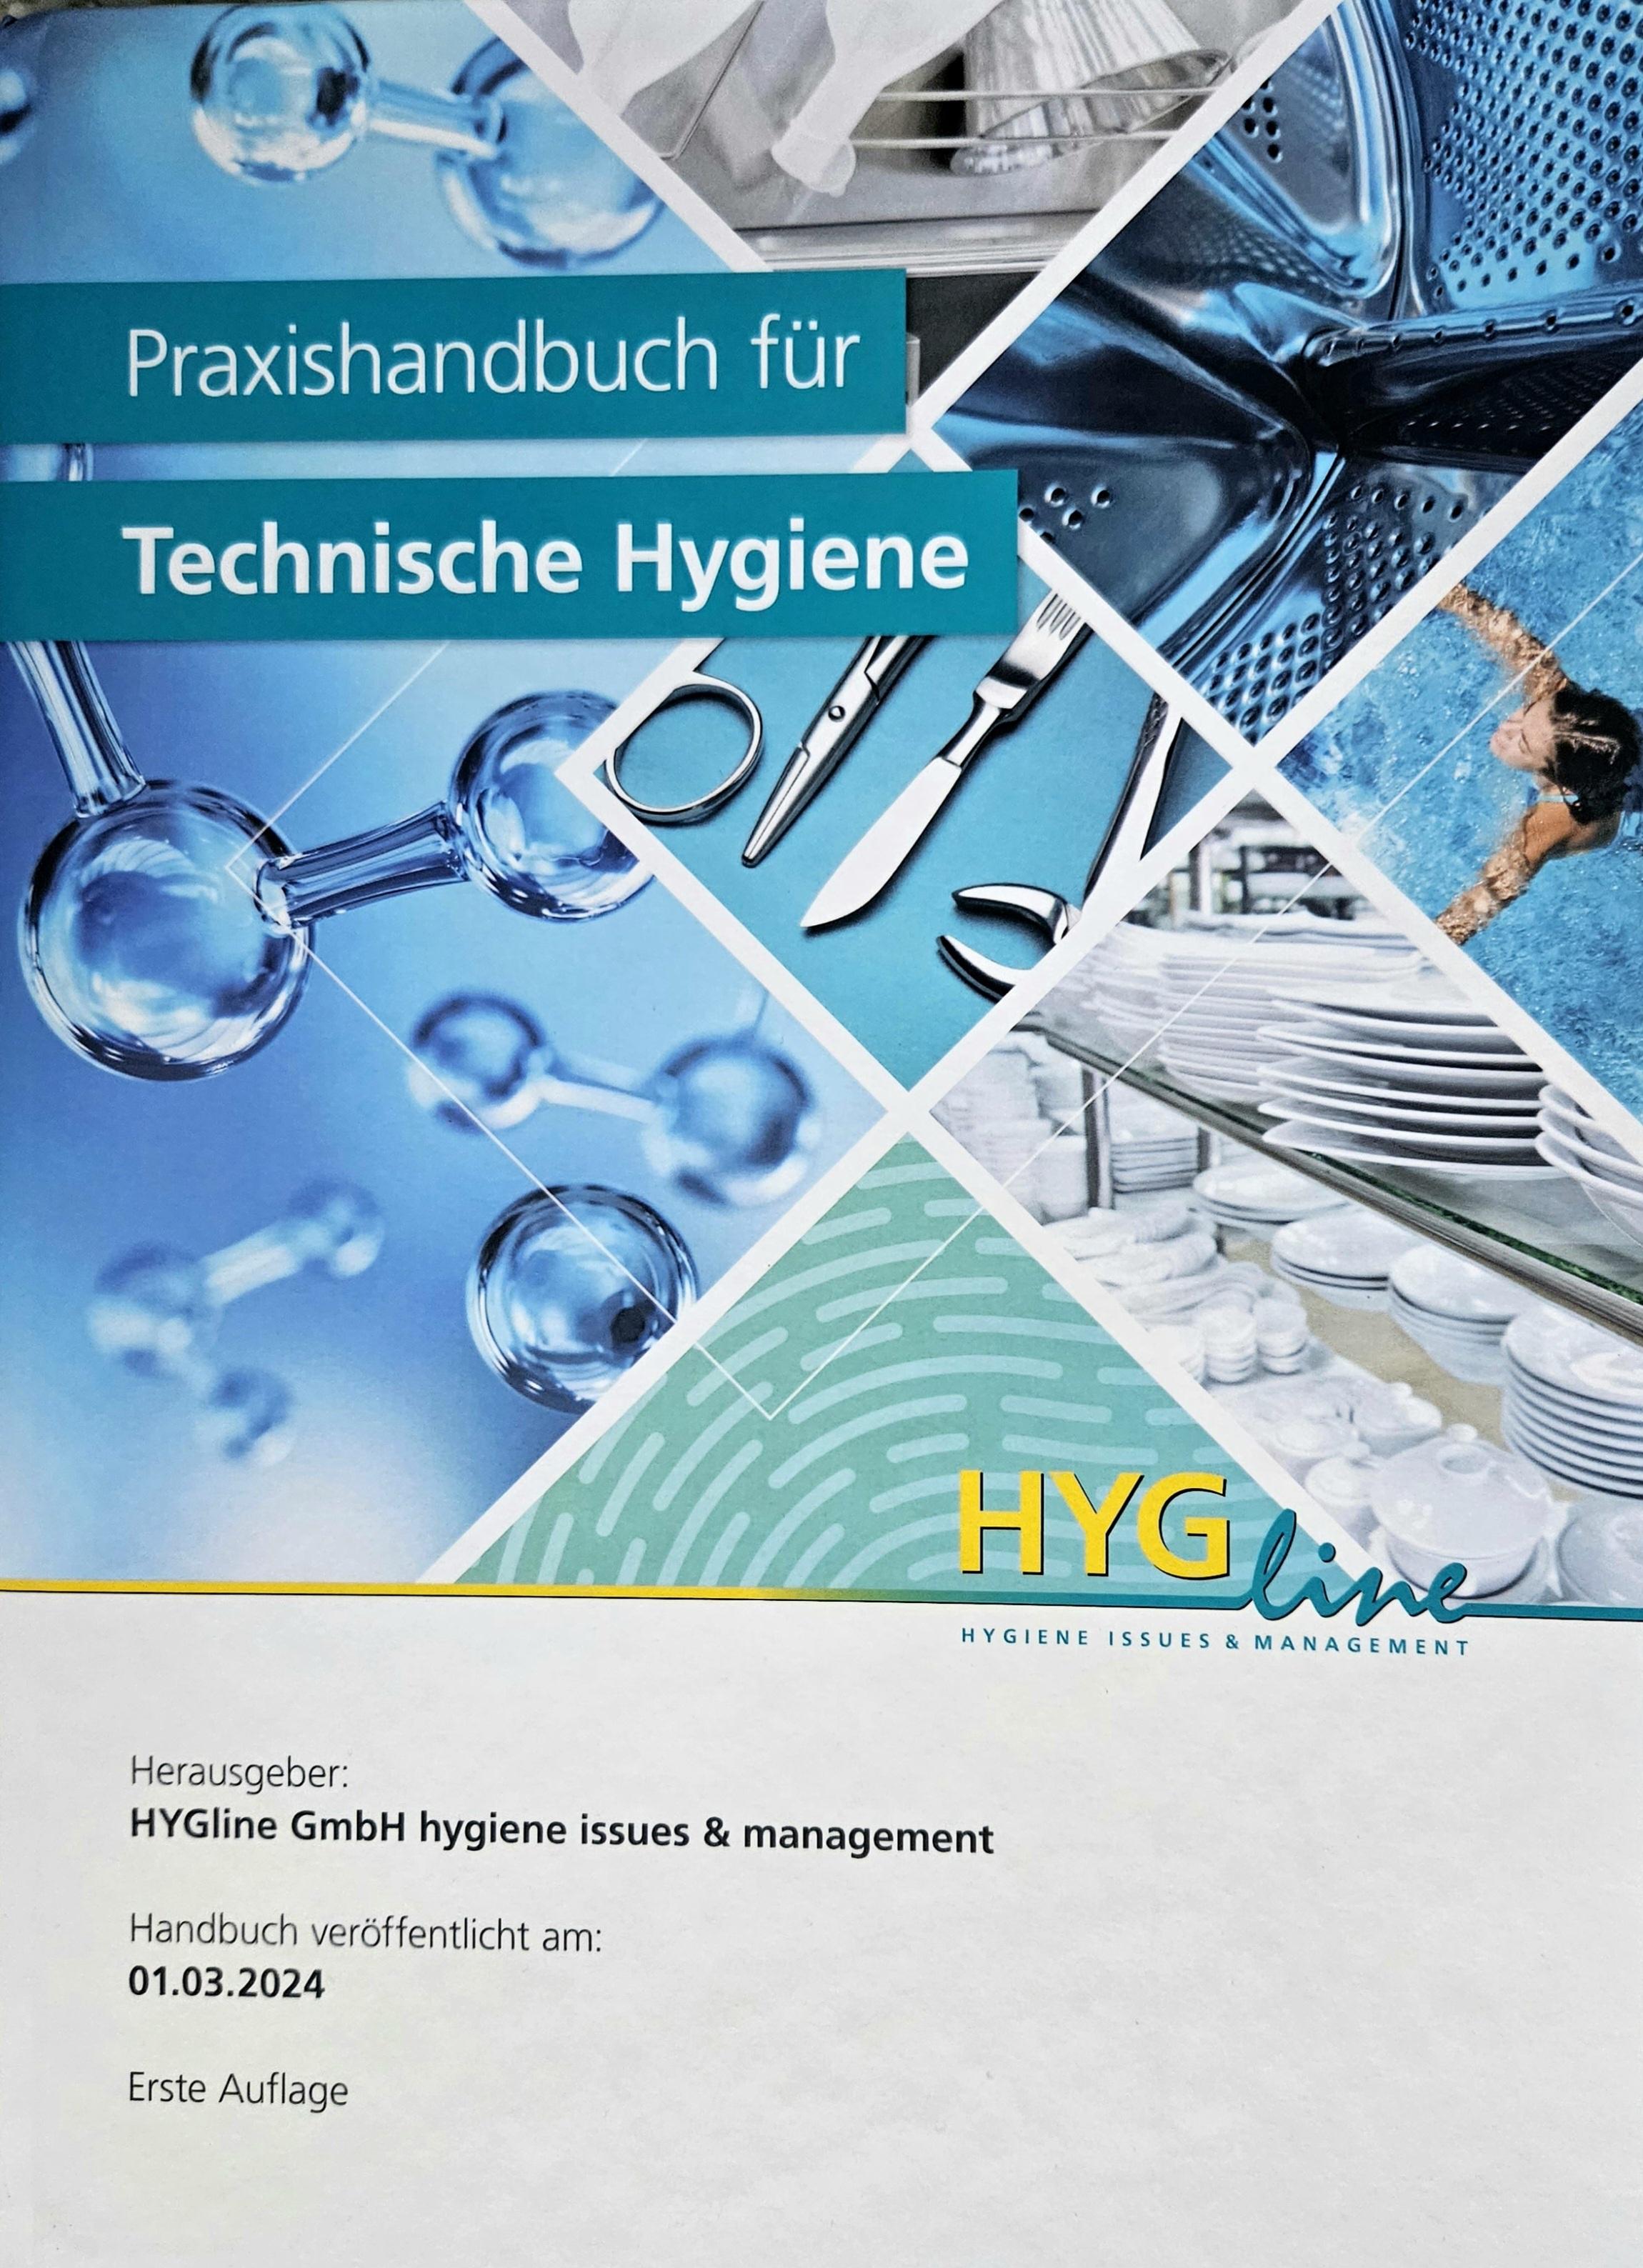 Praxishandbuch für Technische Hygiene